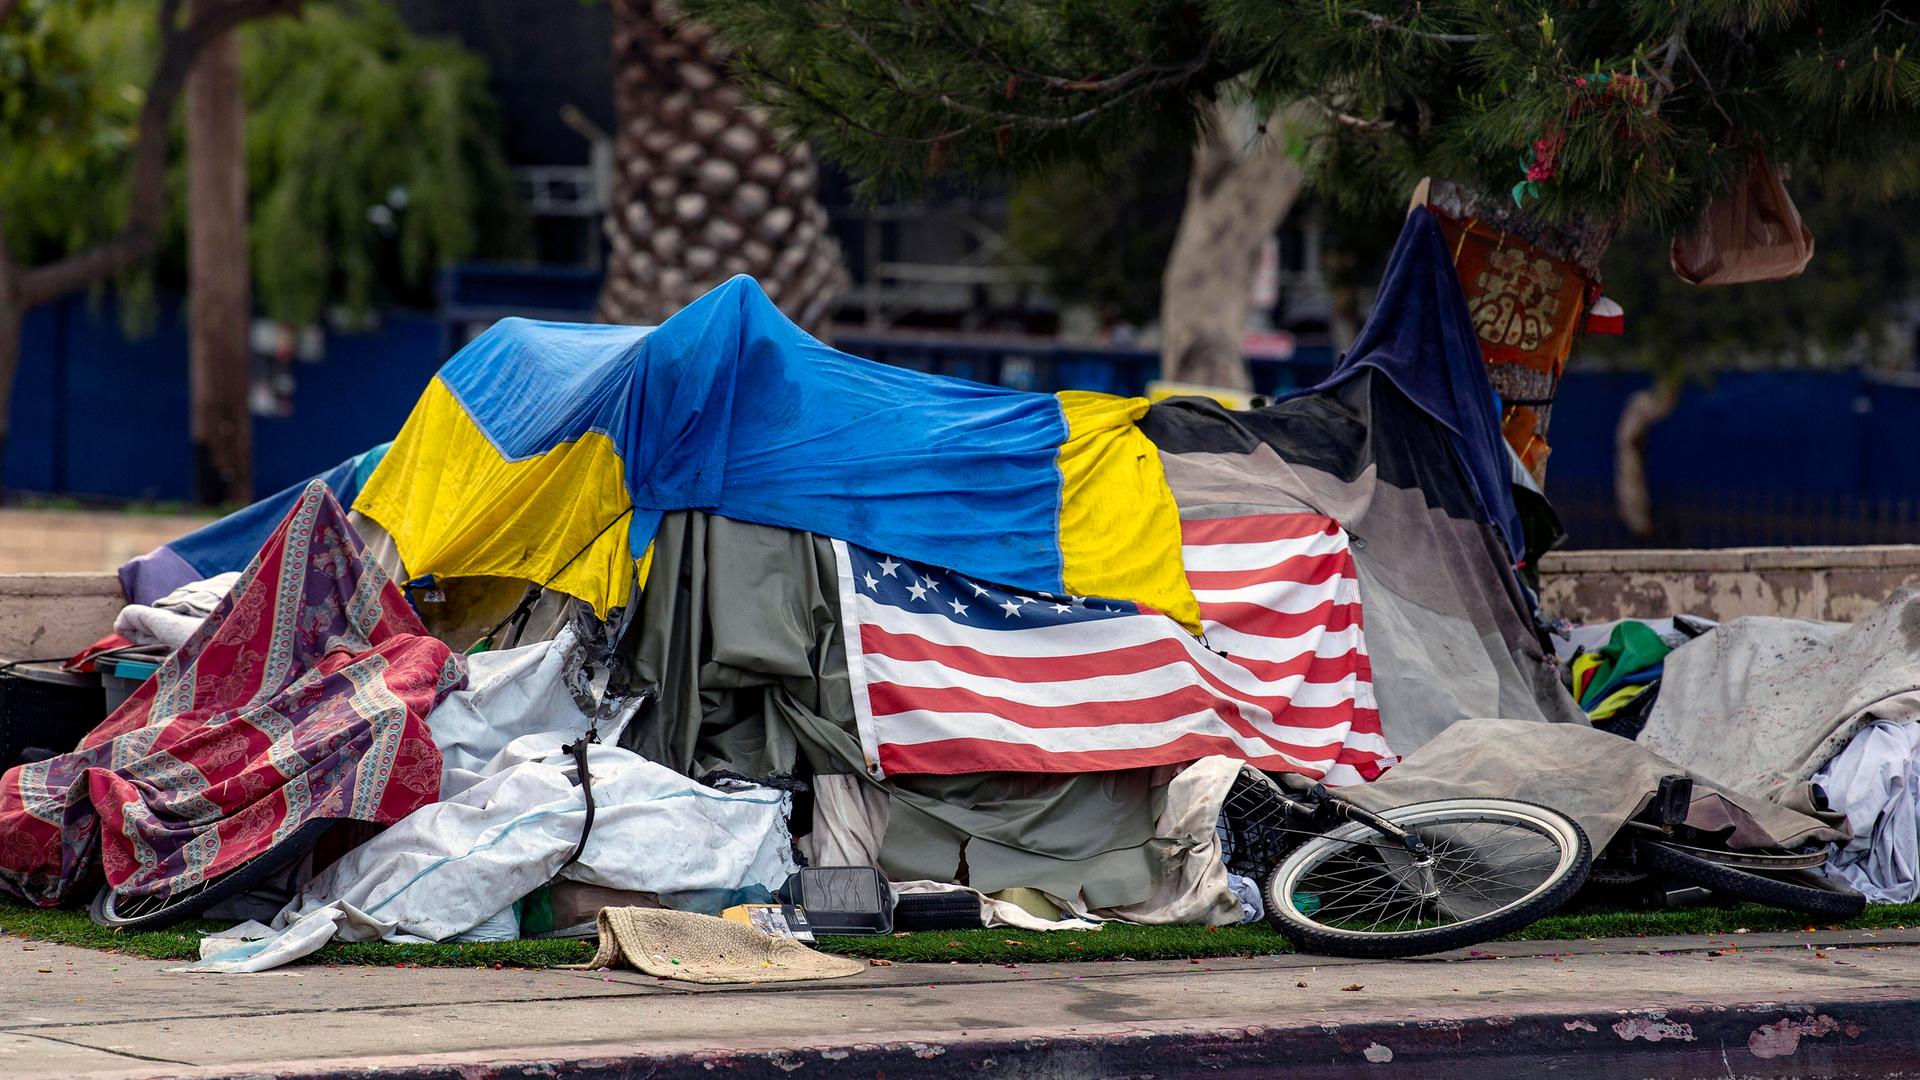 Das Zelt eines Obdachlosen am Straßenrand ist mit der amerikanischen und der ukrainischen Flagge bedeckt.